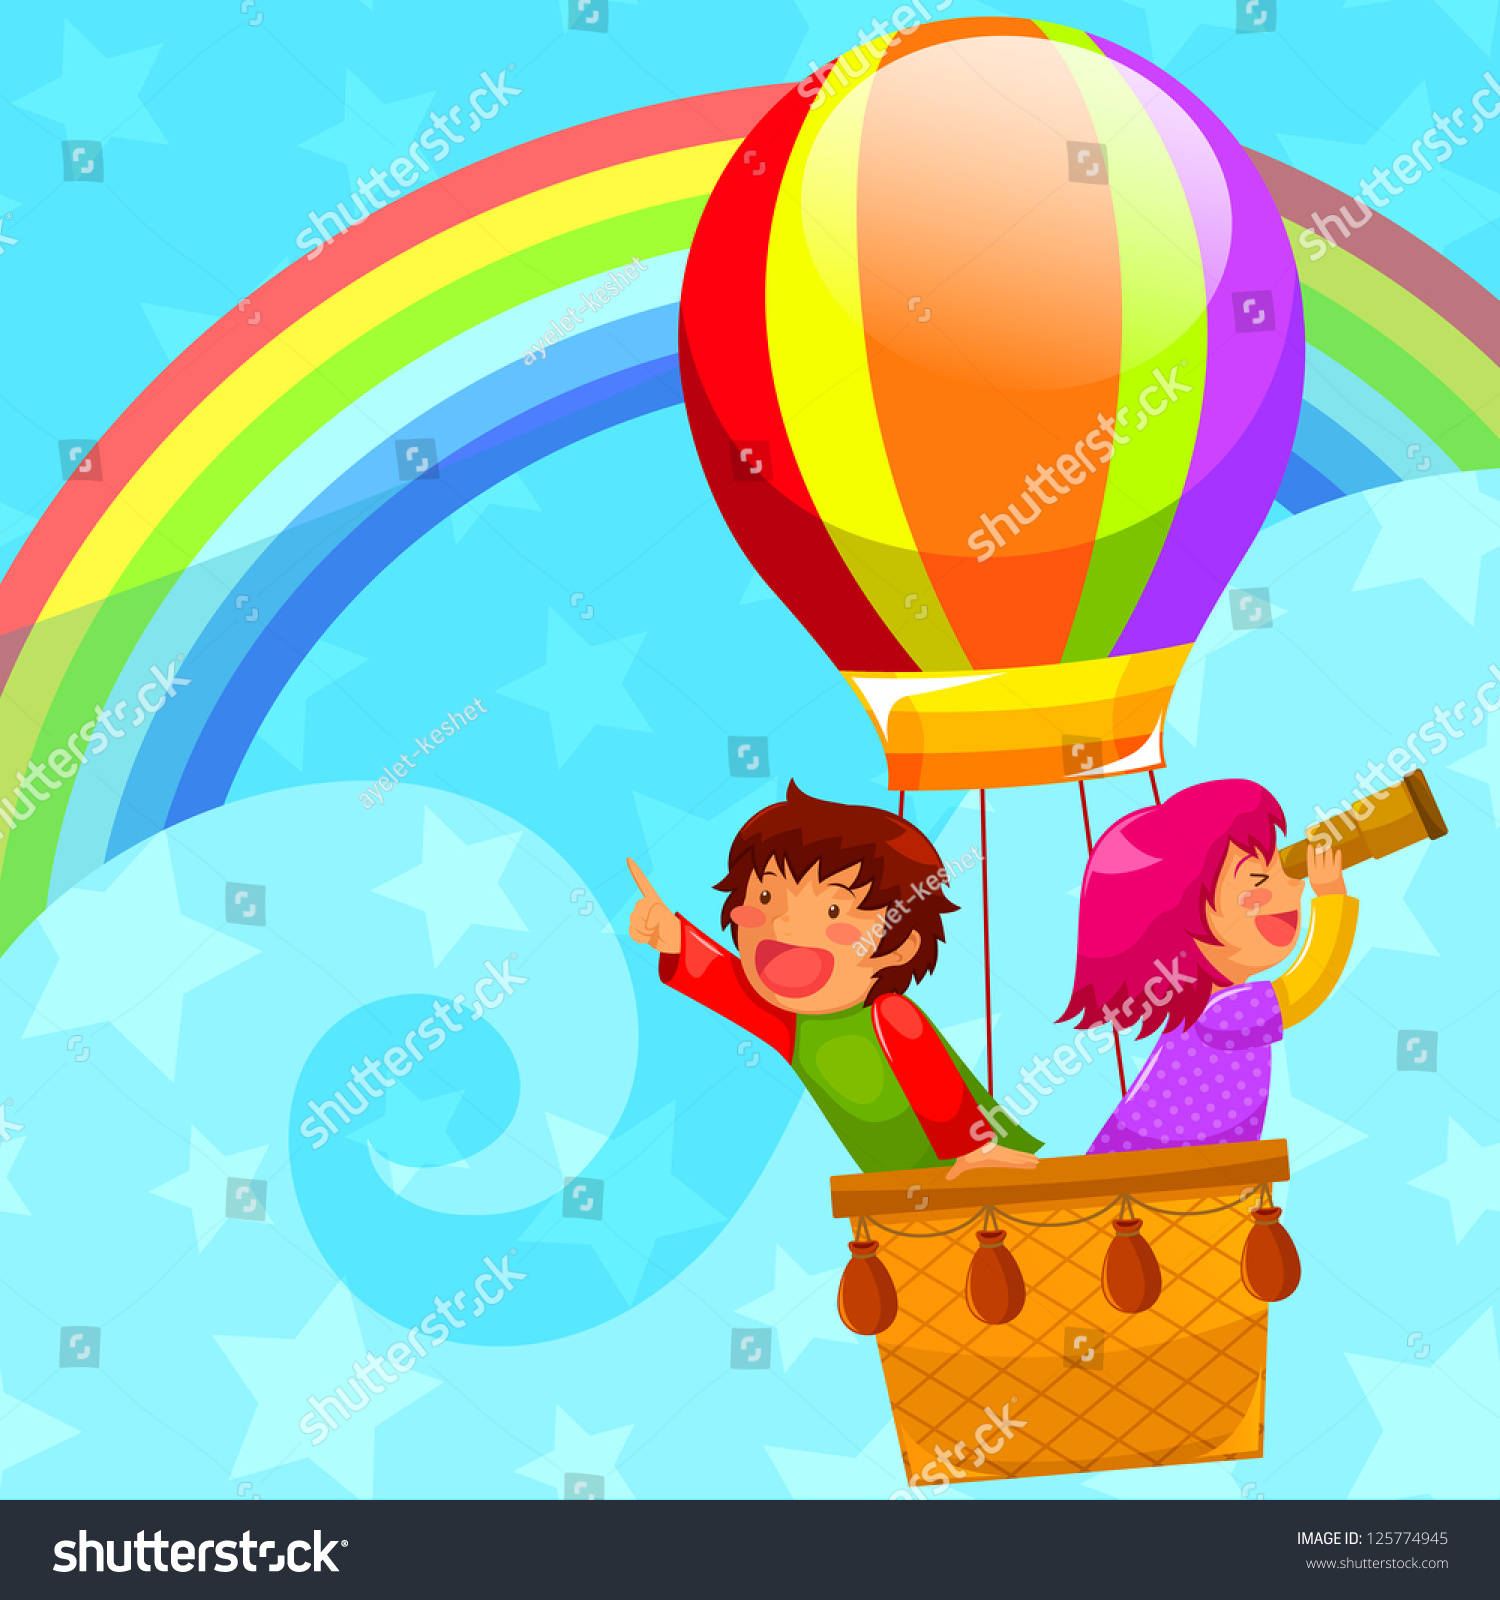 В страну знаний на воздушном шаре. Путешествие на воздушном шаре для детей. Полёт на воздушном шаре для детей. Летаем на воздушном шаре для детей. Воздушный шар иллюстрация.